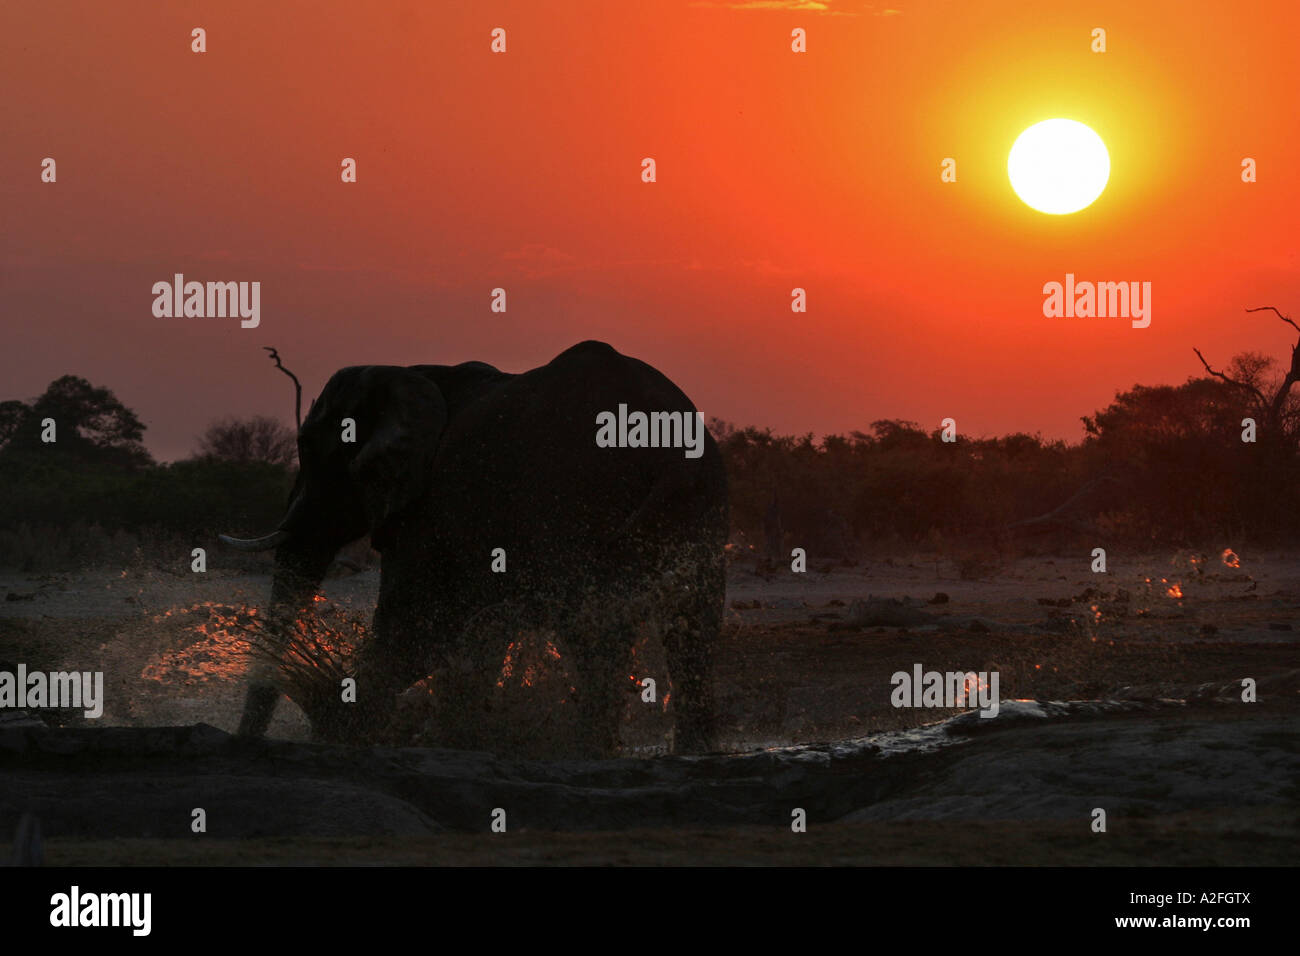 L'éléphant africain (Loxodonta africana) dans le trou d'eau, coucher du soleil. Savuti, Chobe National Park, Botswana, Africa Banque D'Images